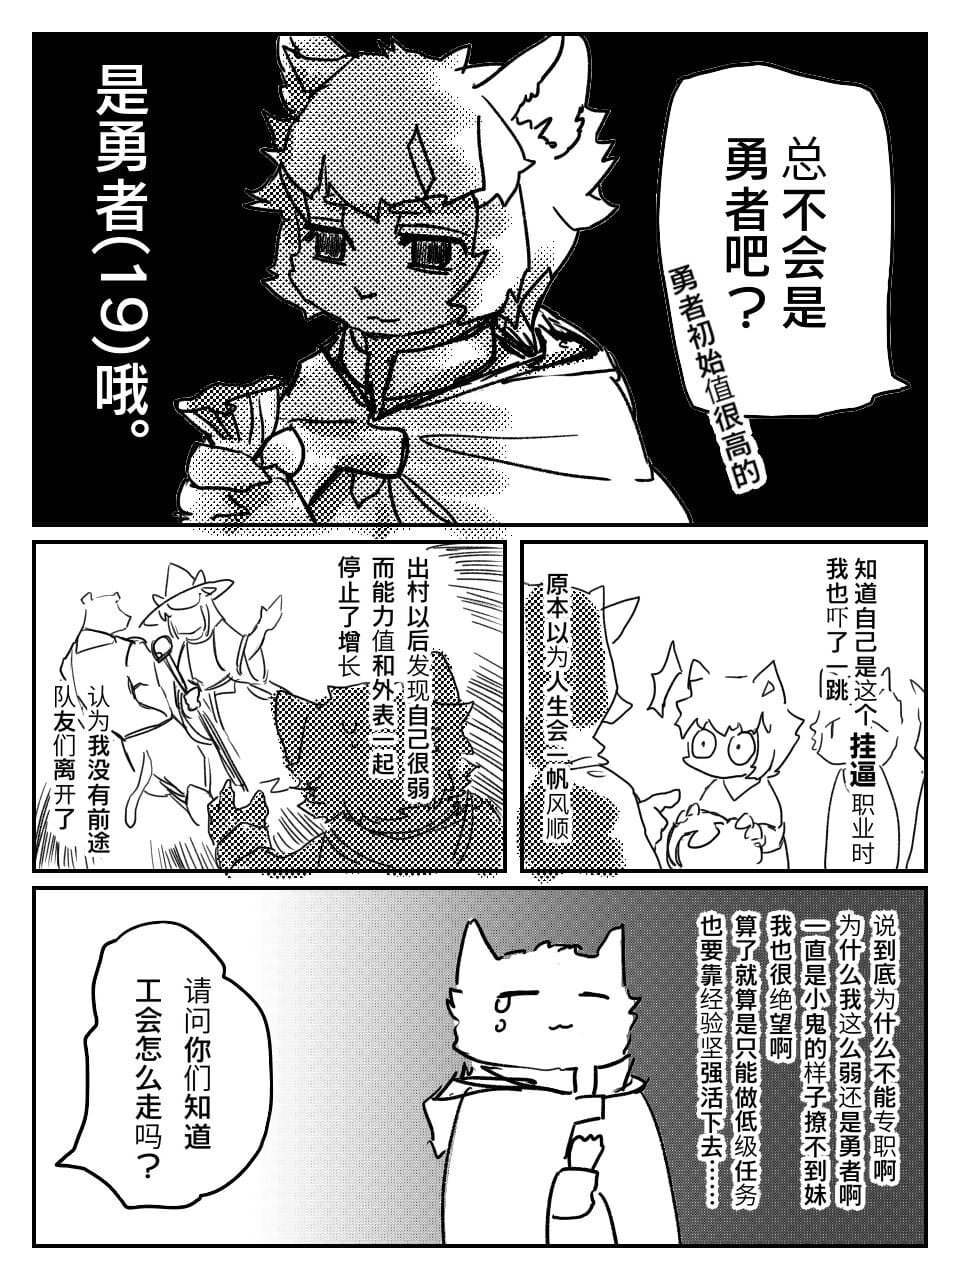 （teammate）勇者和法师露营的小故事 by:鬼流 page 1